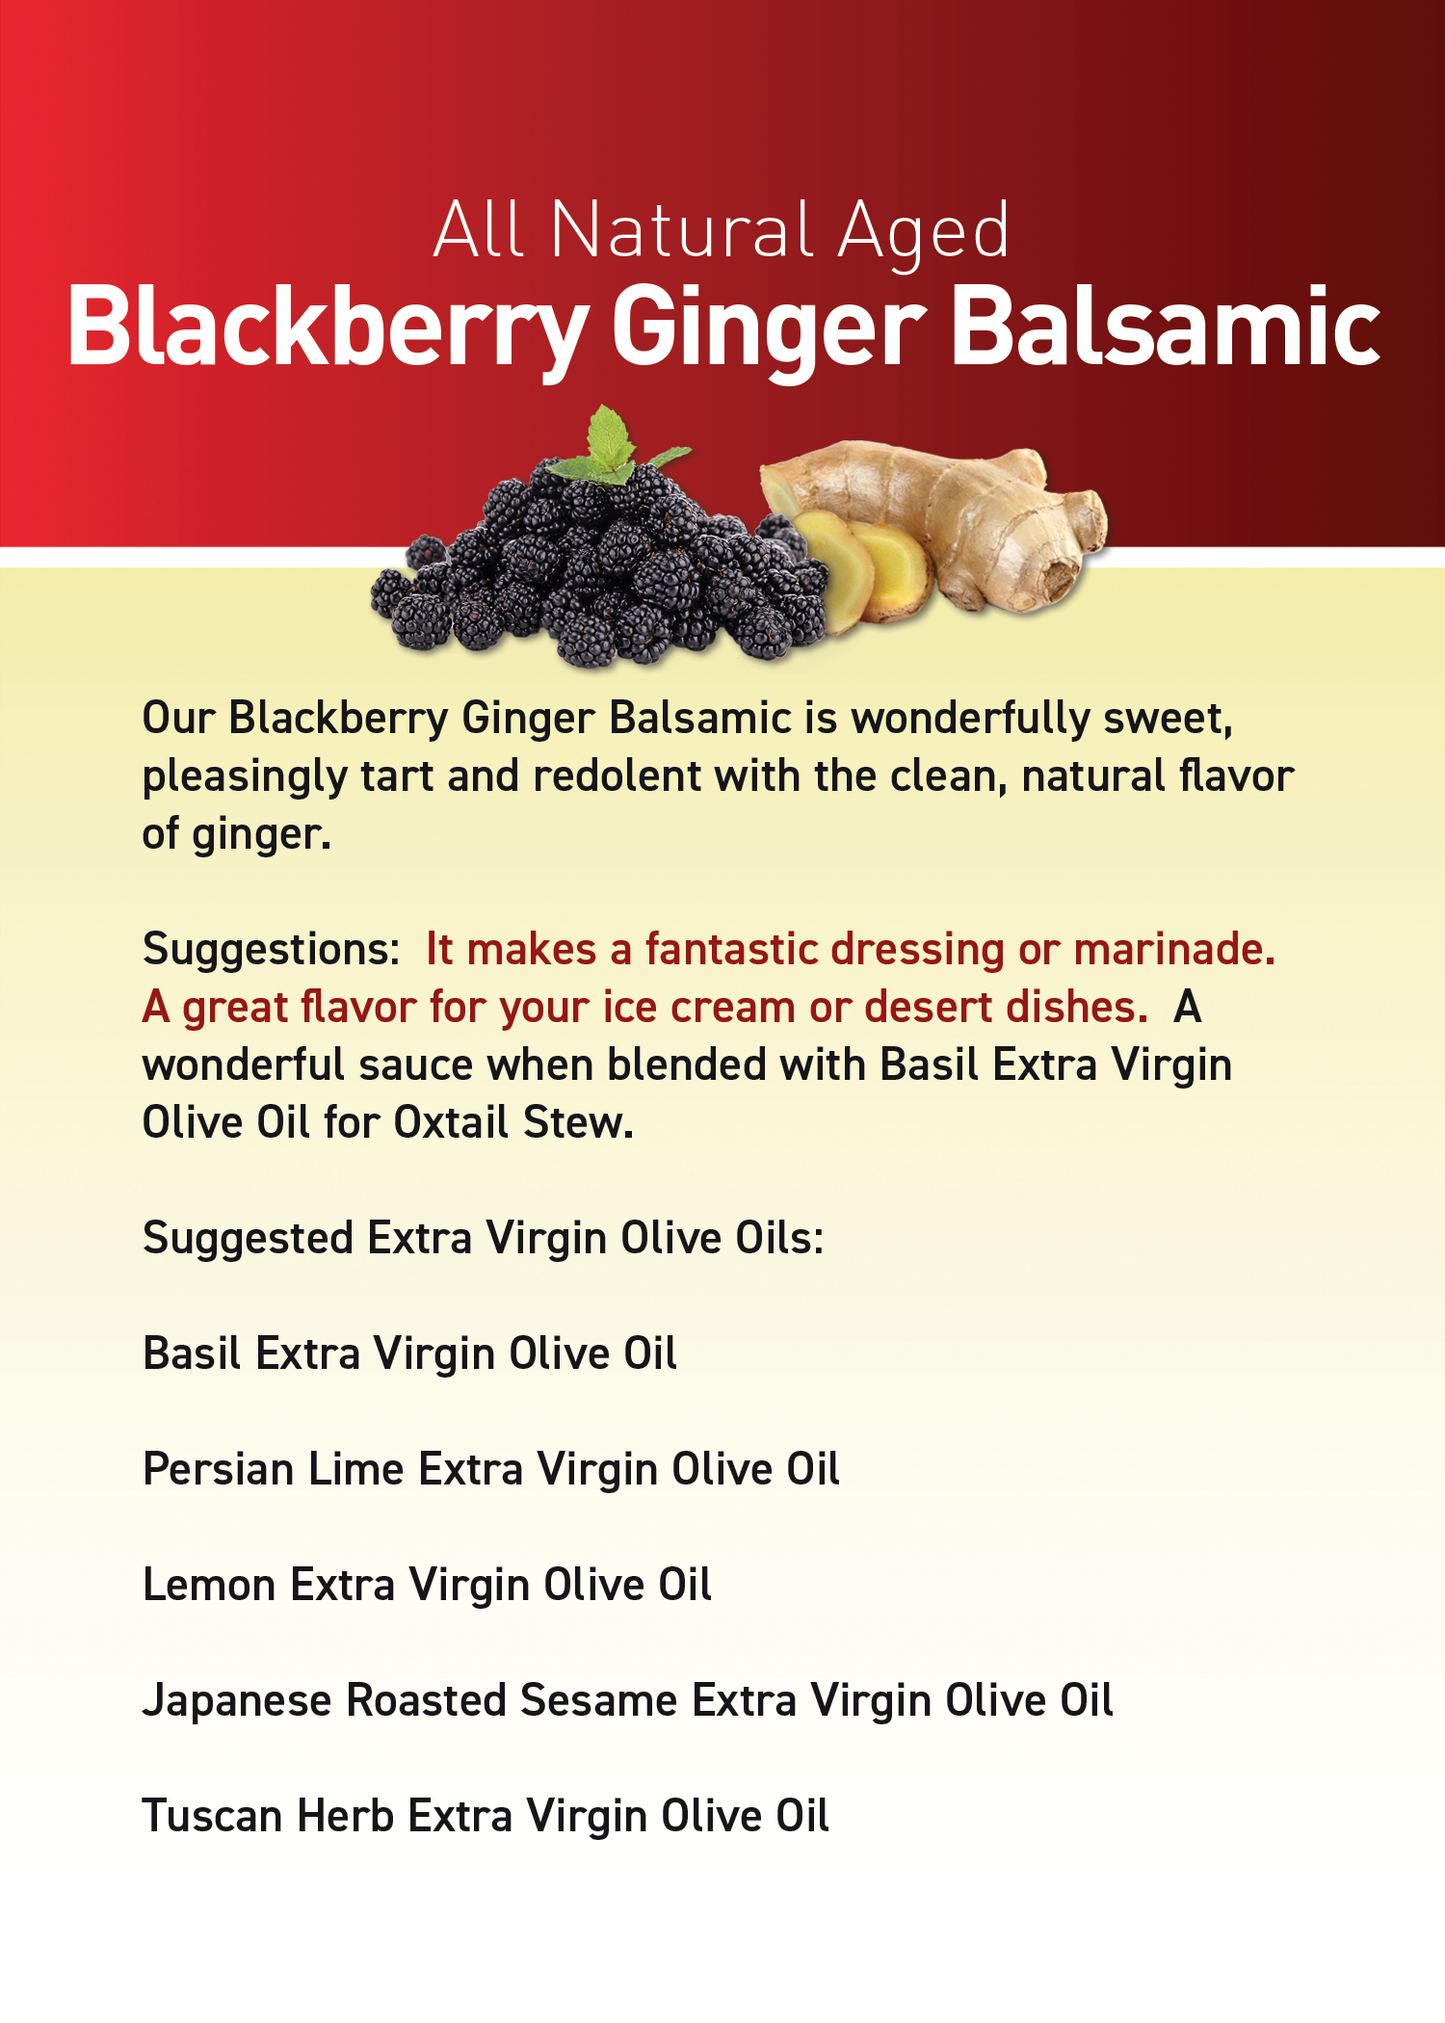 Blackberry/Ginger Balsamic